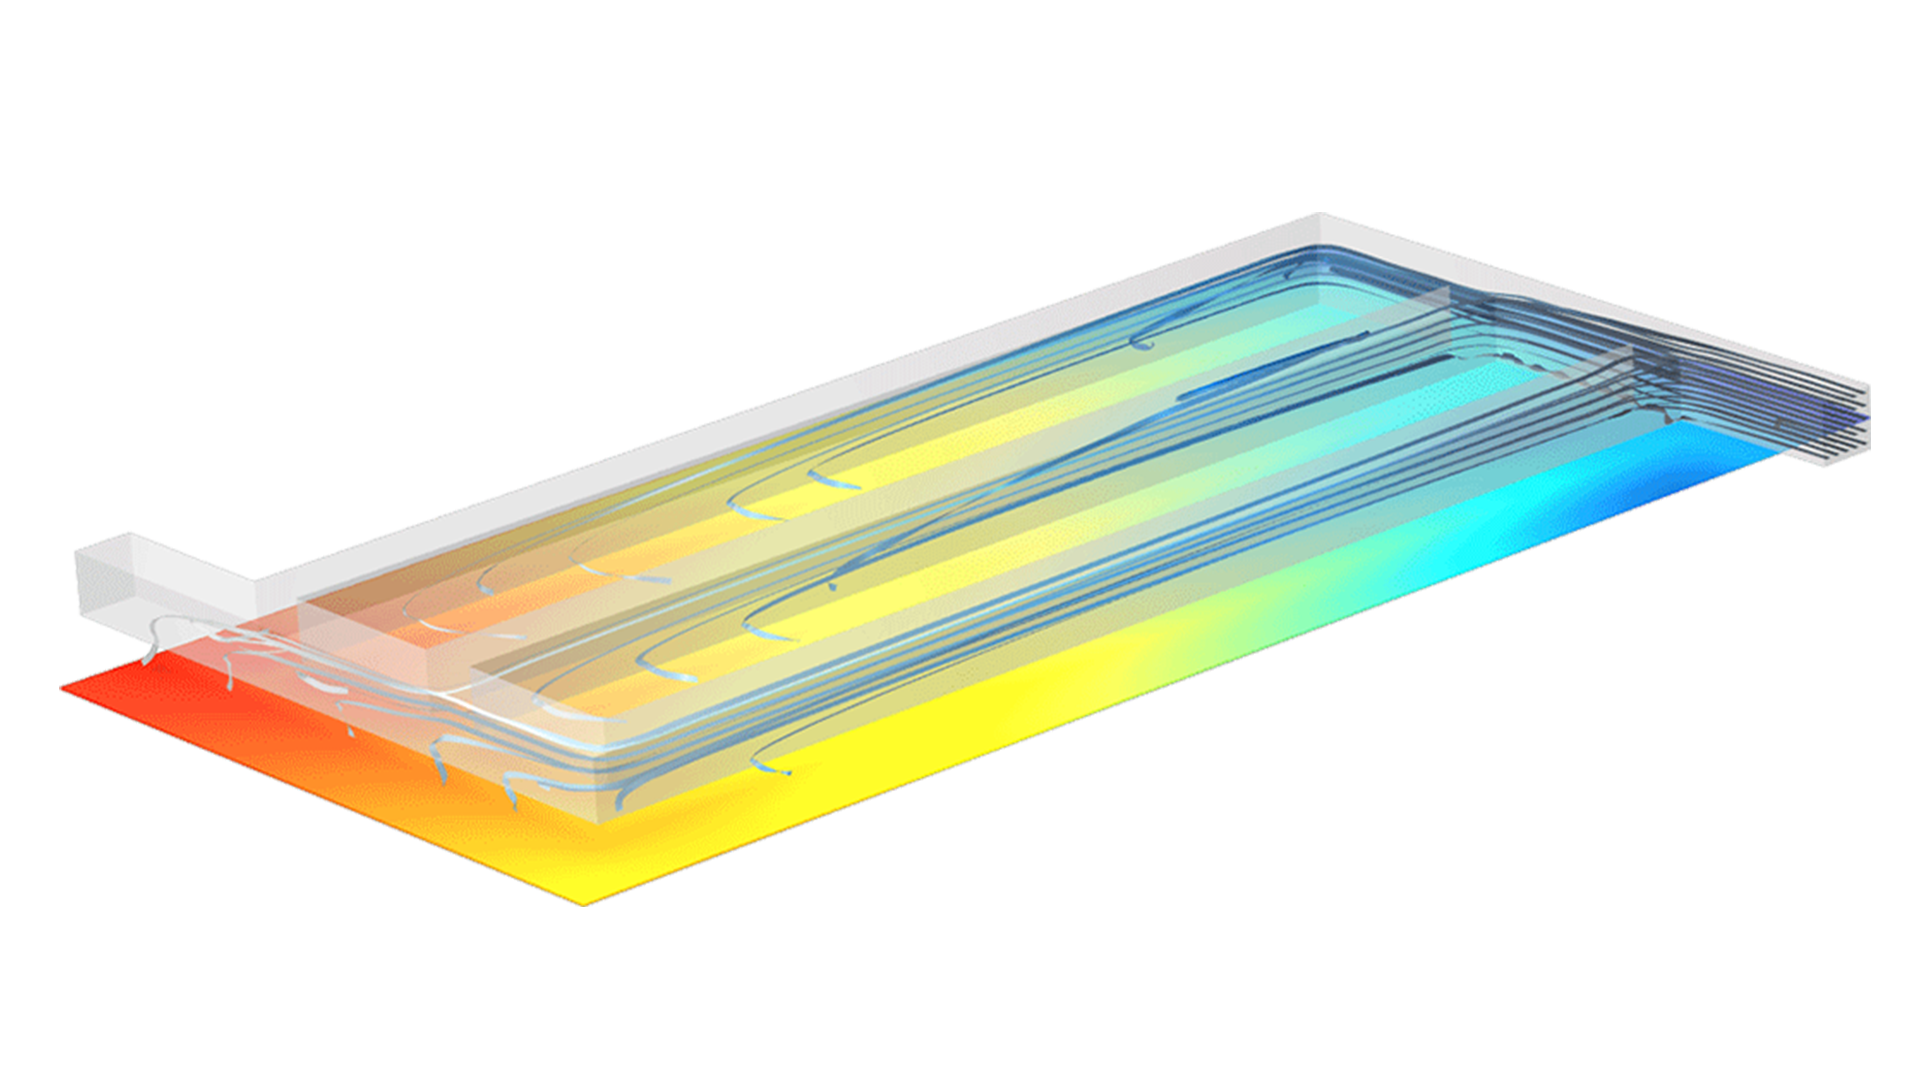 Modell eines Separators mit Stromlinien, die durch mehrere Kanäle fließen, und einer darunter liegenden Ebene in Regenbogenfarben zur Darstellung der Stromdichteverteilung.